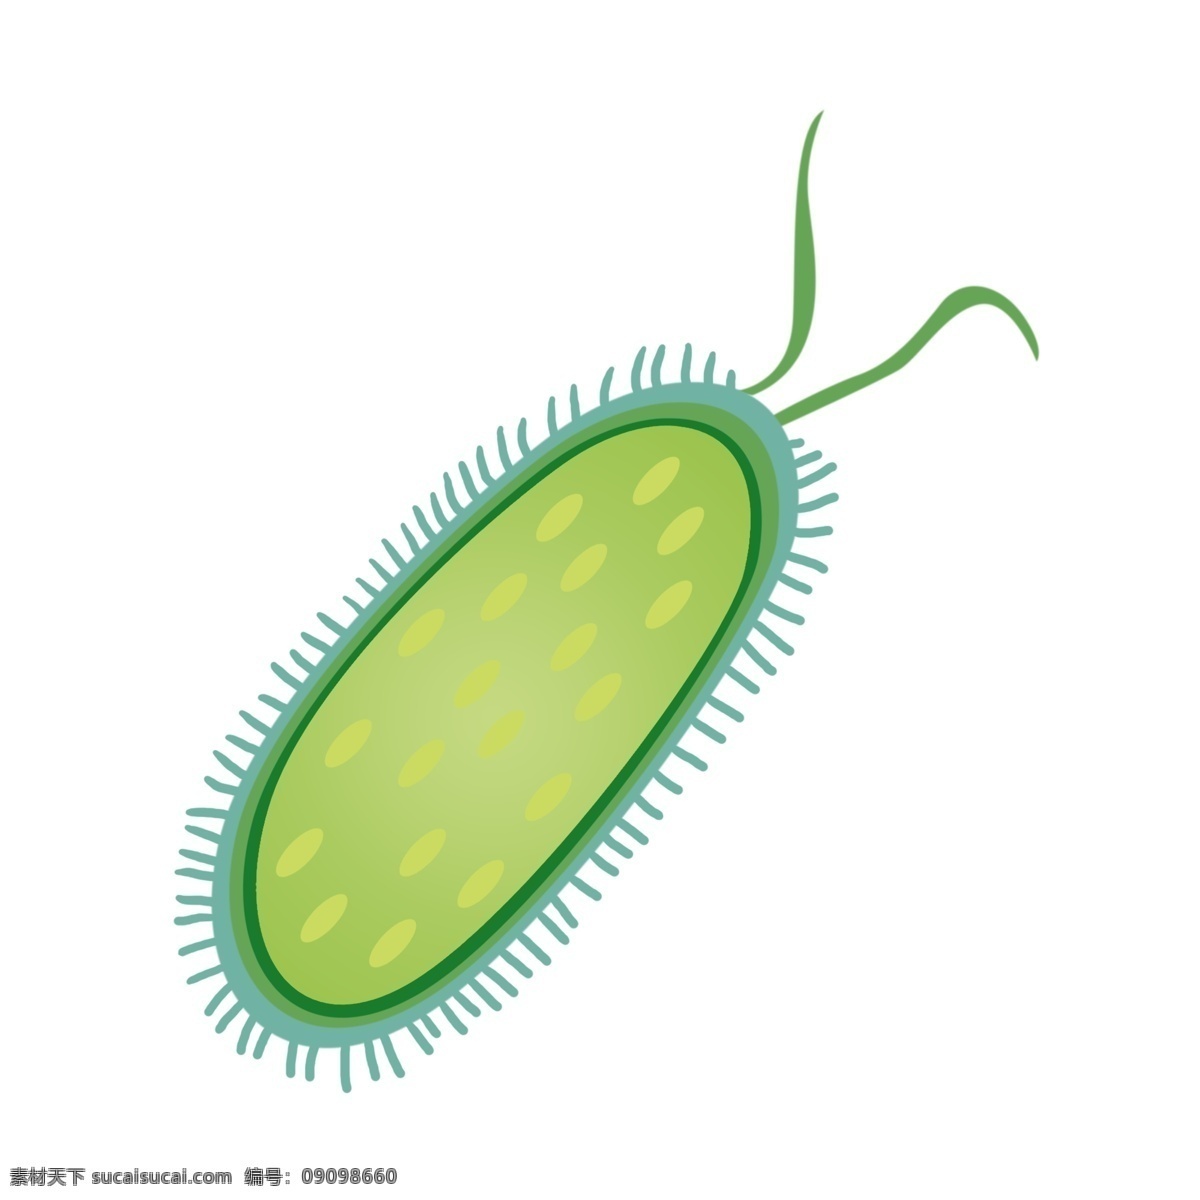 长毛 有害 细菌 插画 长毛的细菌 卡通插画 有害细菌 细菌插画 病菌插画 病菌细菌 绿色的细菌